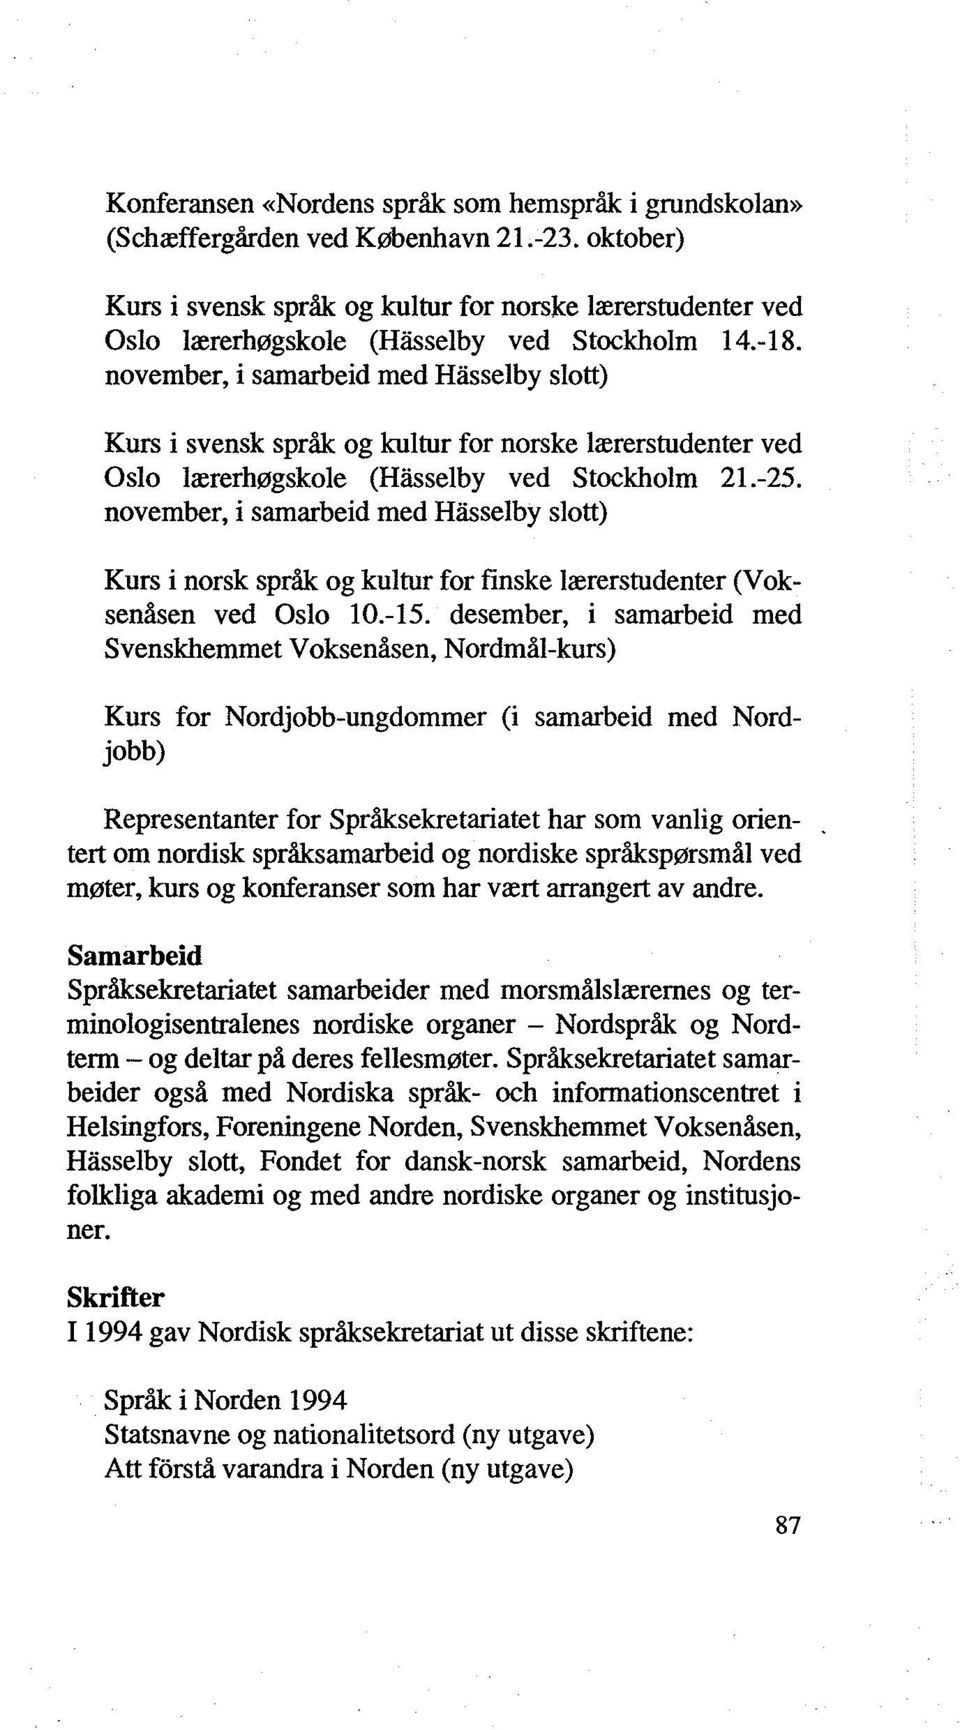 november, i samarbeid med Hasselby slott) Kurs i svensk språk og kultur for norske lærerstudenter ved Oslo lærerhøgskole (Hasselby ved Stockholm 21.-25.